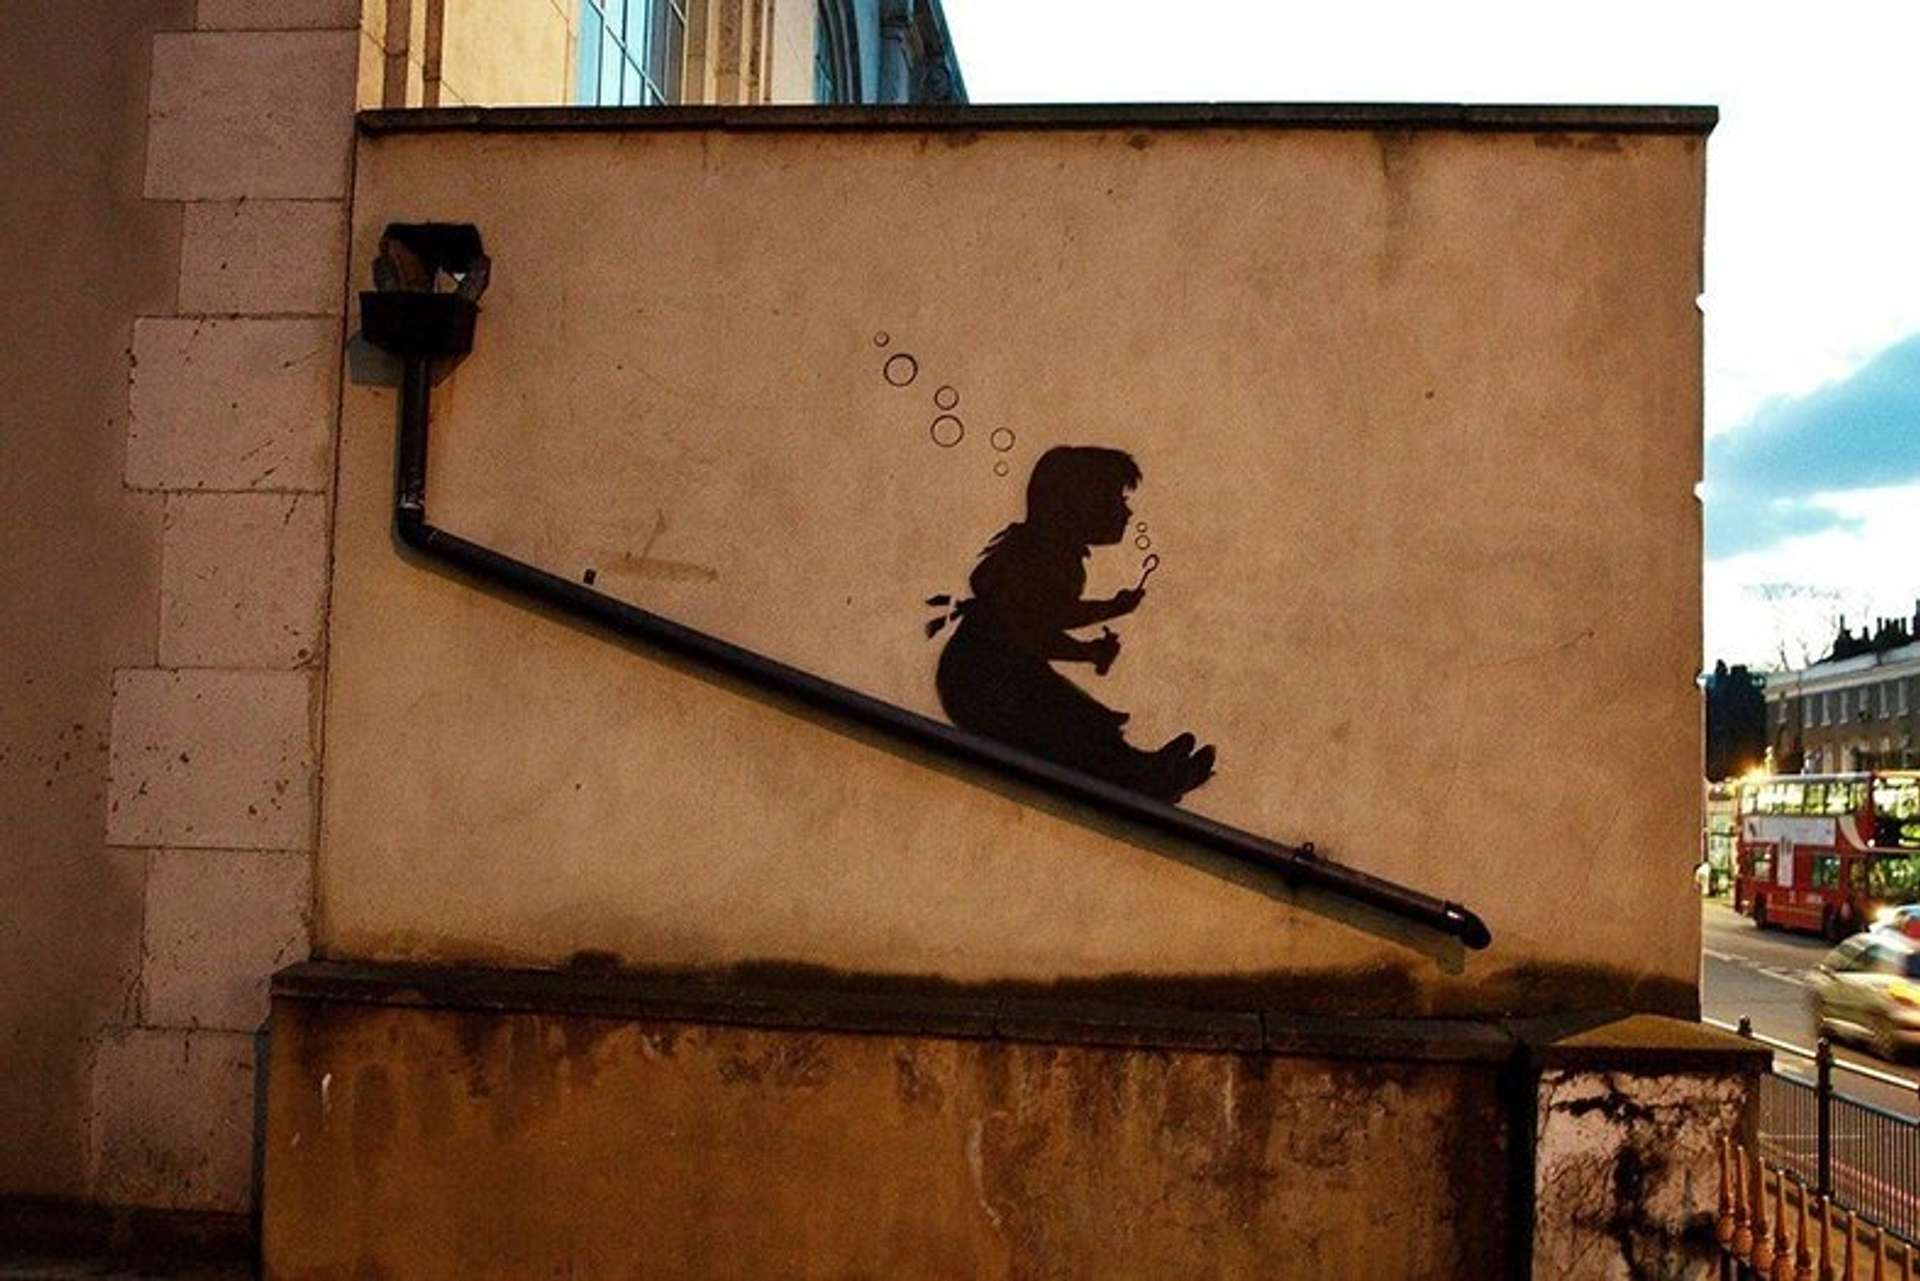 Bubble Slide Girl by Banksy